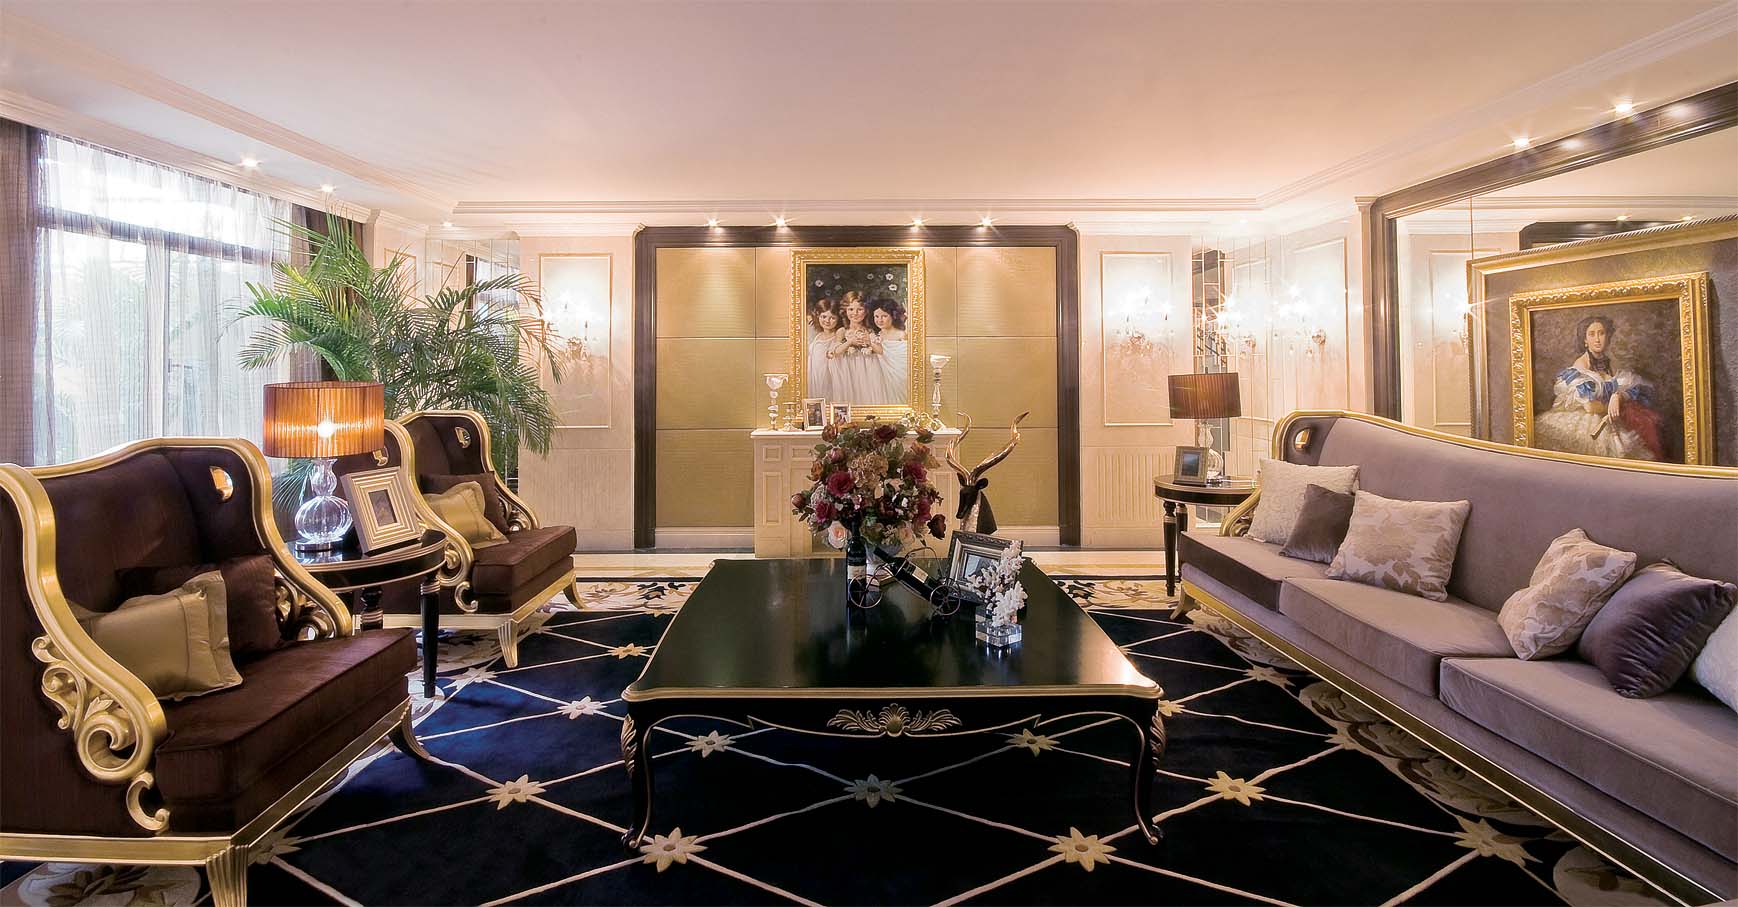 简约 欧式 后现代 别墅 小资 客厅图片来自孟庆莹在格林云墅后现代风格216平米的分享